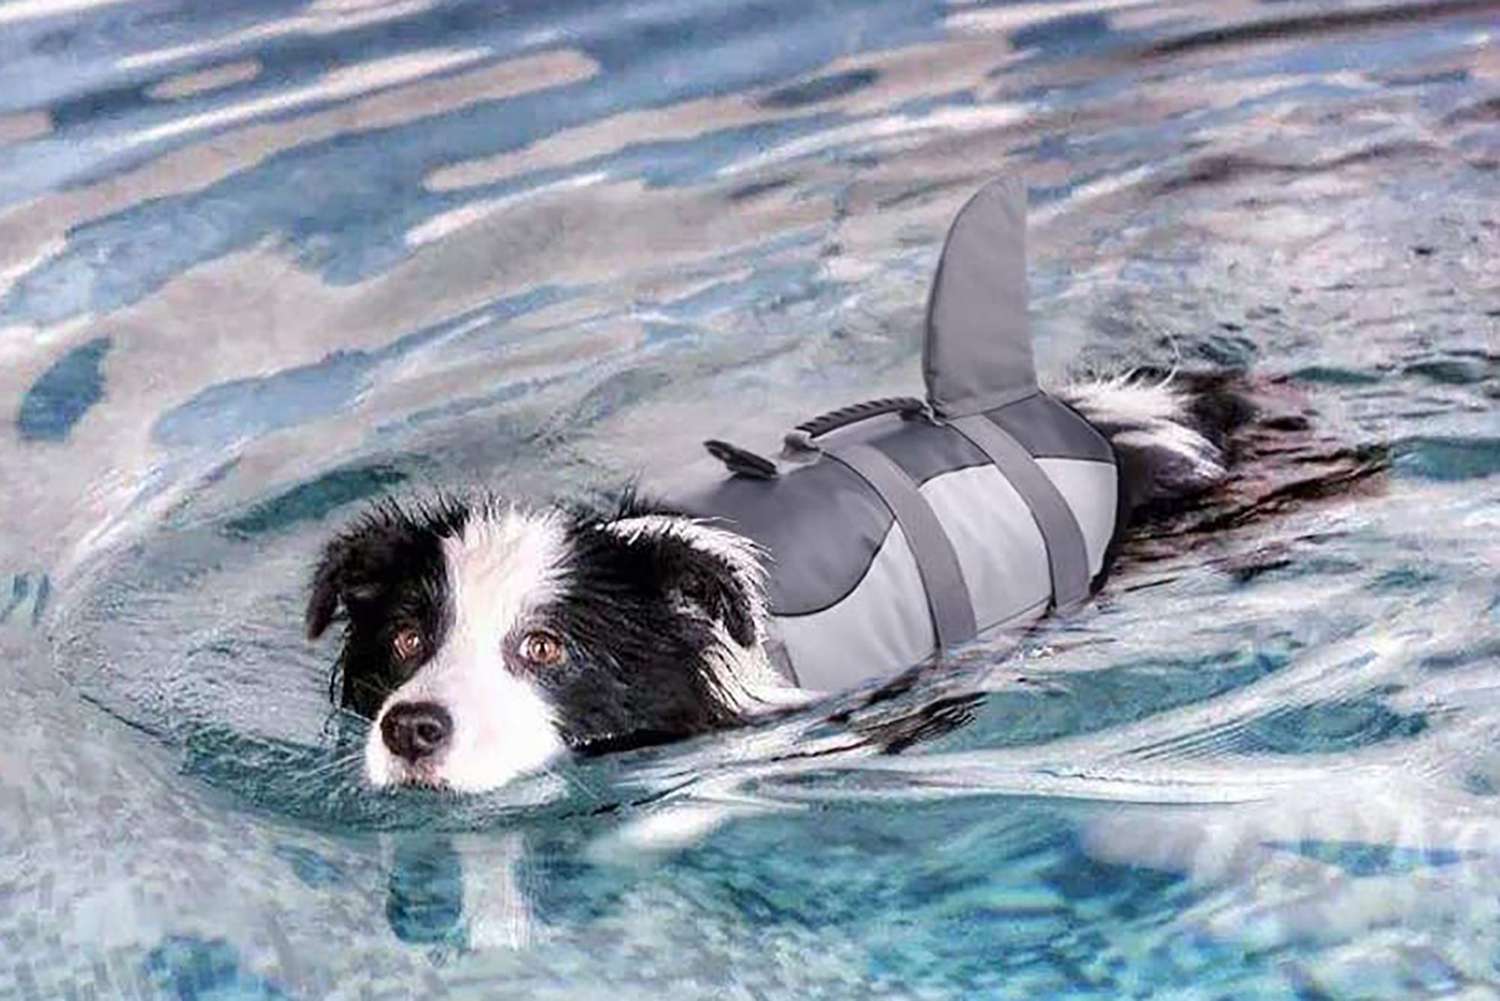 Dog Life Jacket Buoyancy Aid Pet Swimming Vest Boating Adjustable Foam Safe Suit 